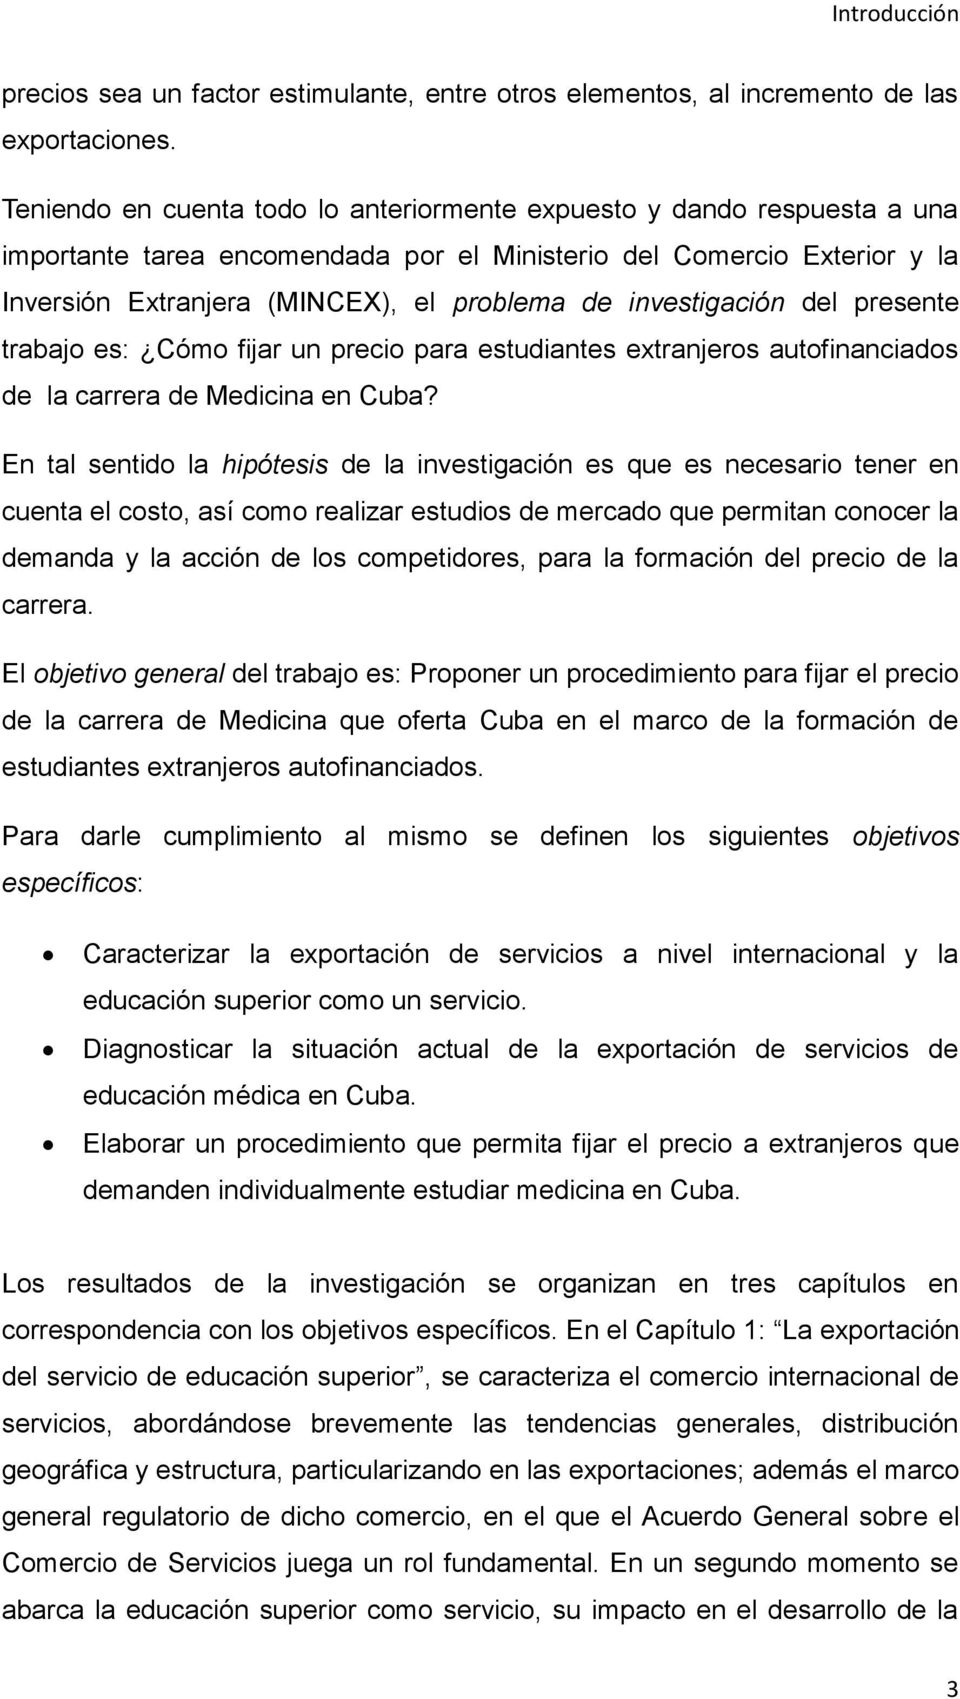 investigación del presente trabajo es: Cómo fijar un precio para estudiantes extranjeros autofinanciados de la carrera de Medicina en Cuba?